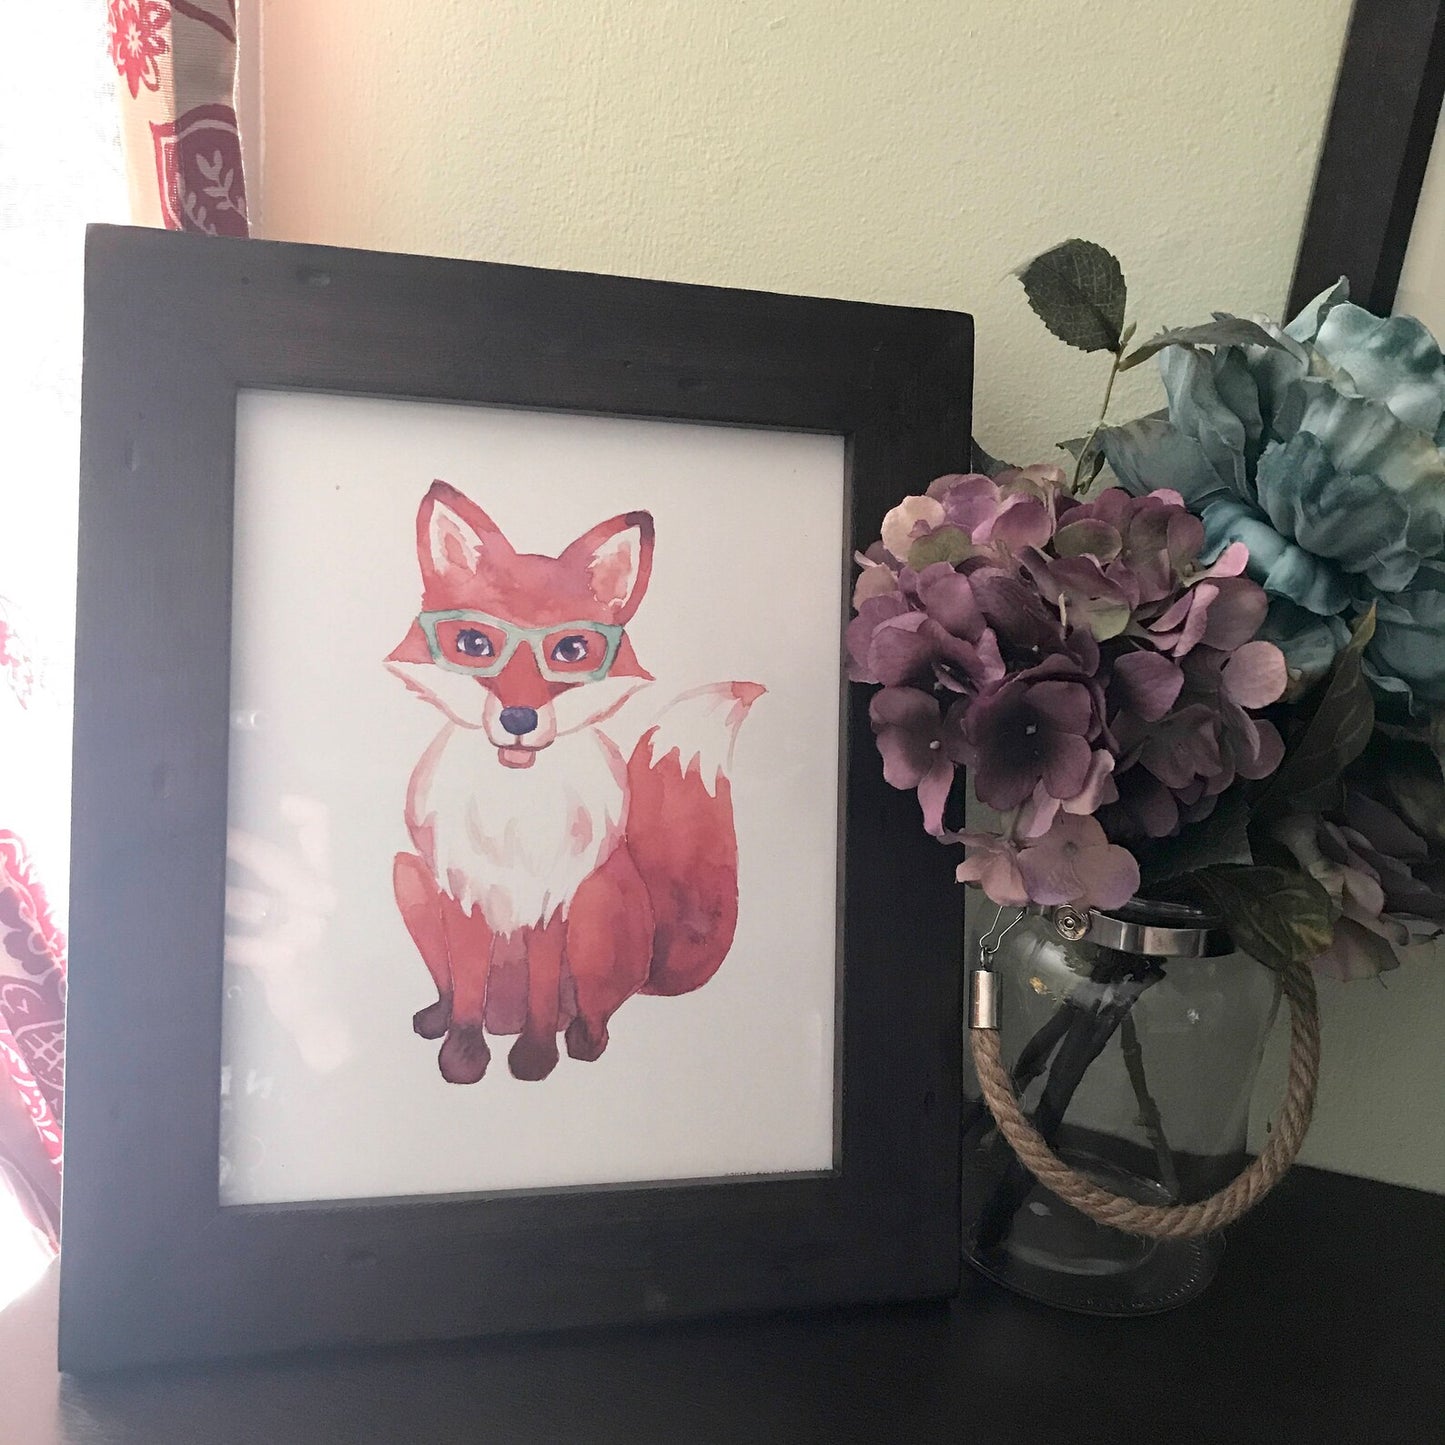 Fox in Glasses Print